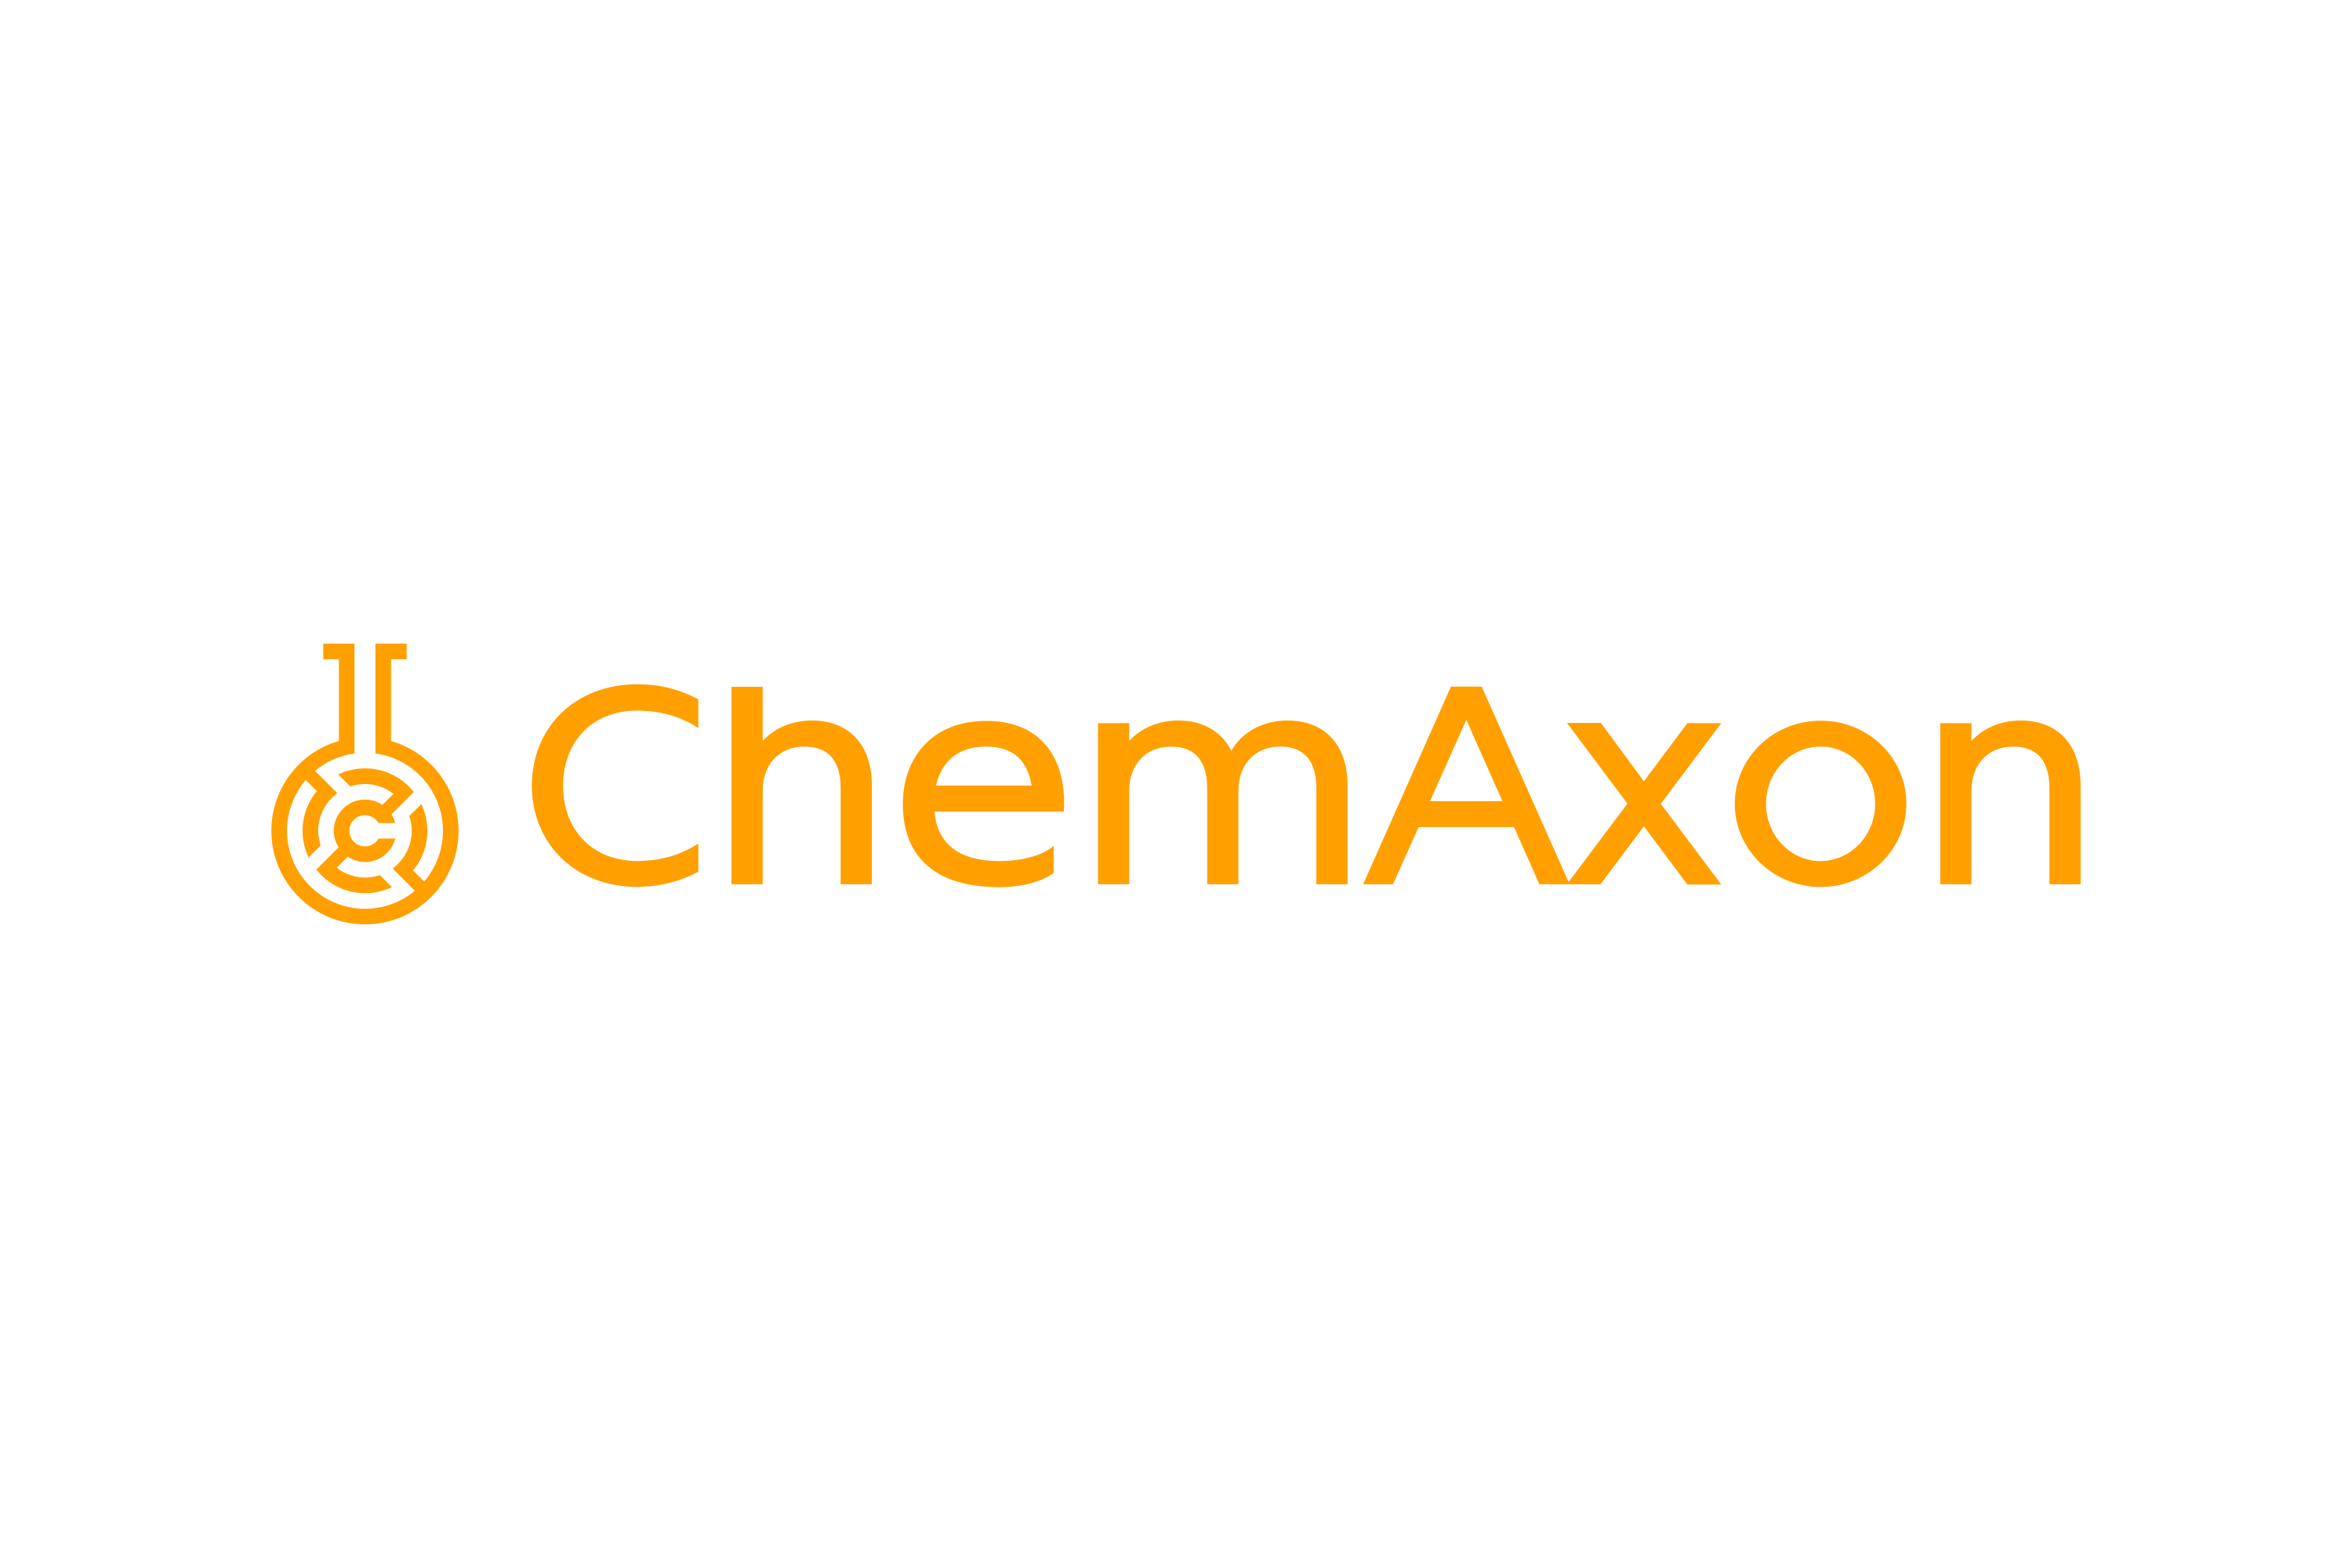 Chemaxon